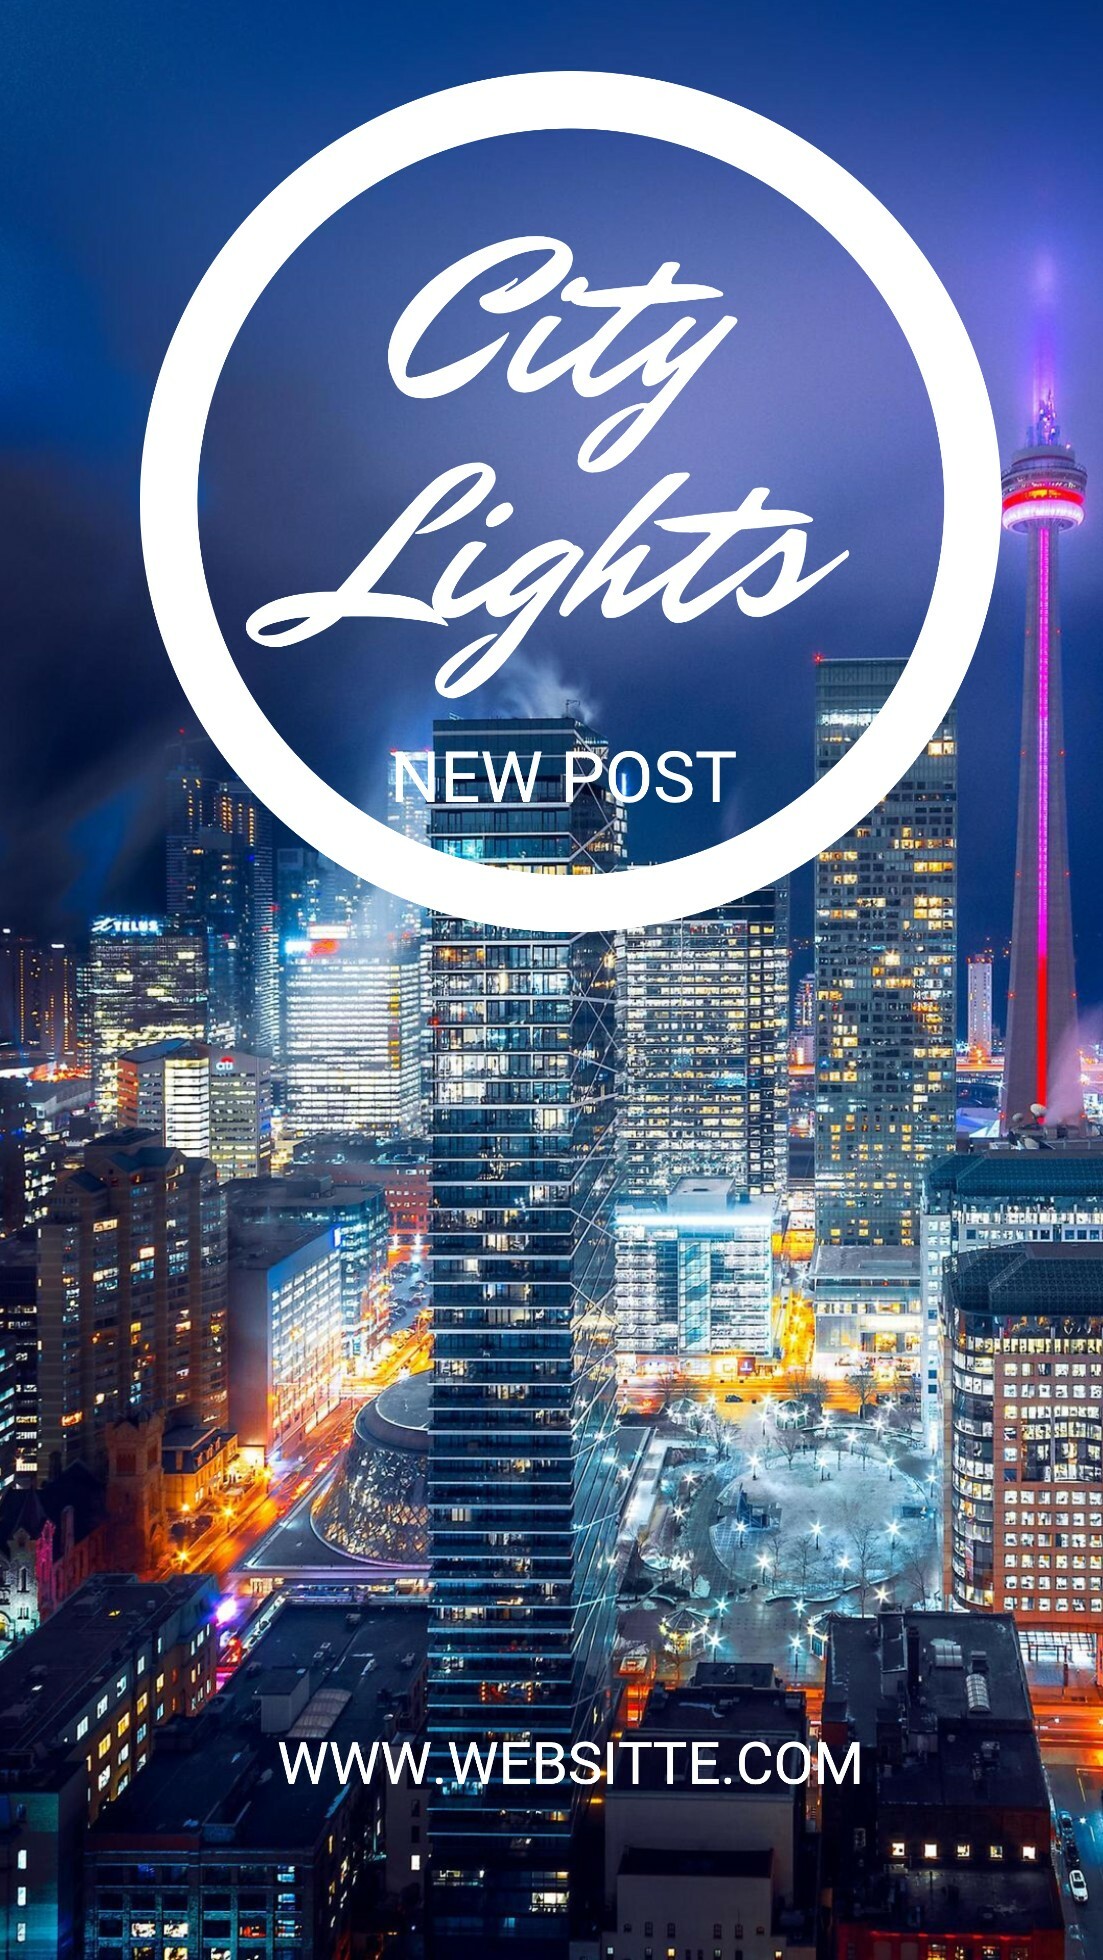 City Lights New Social Media Post Template